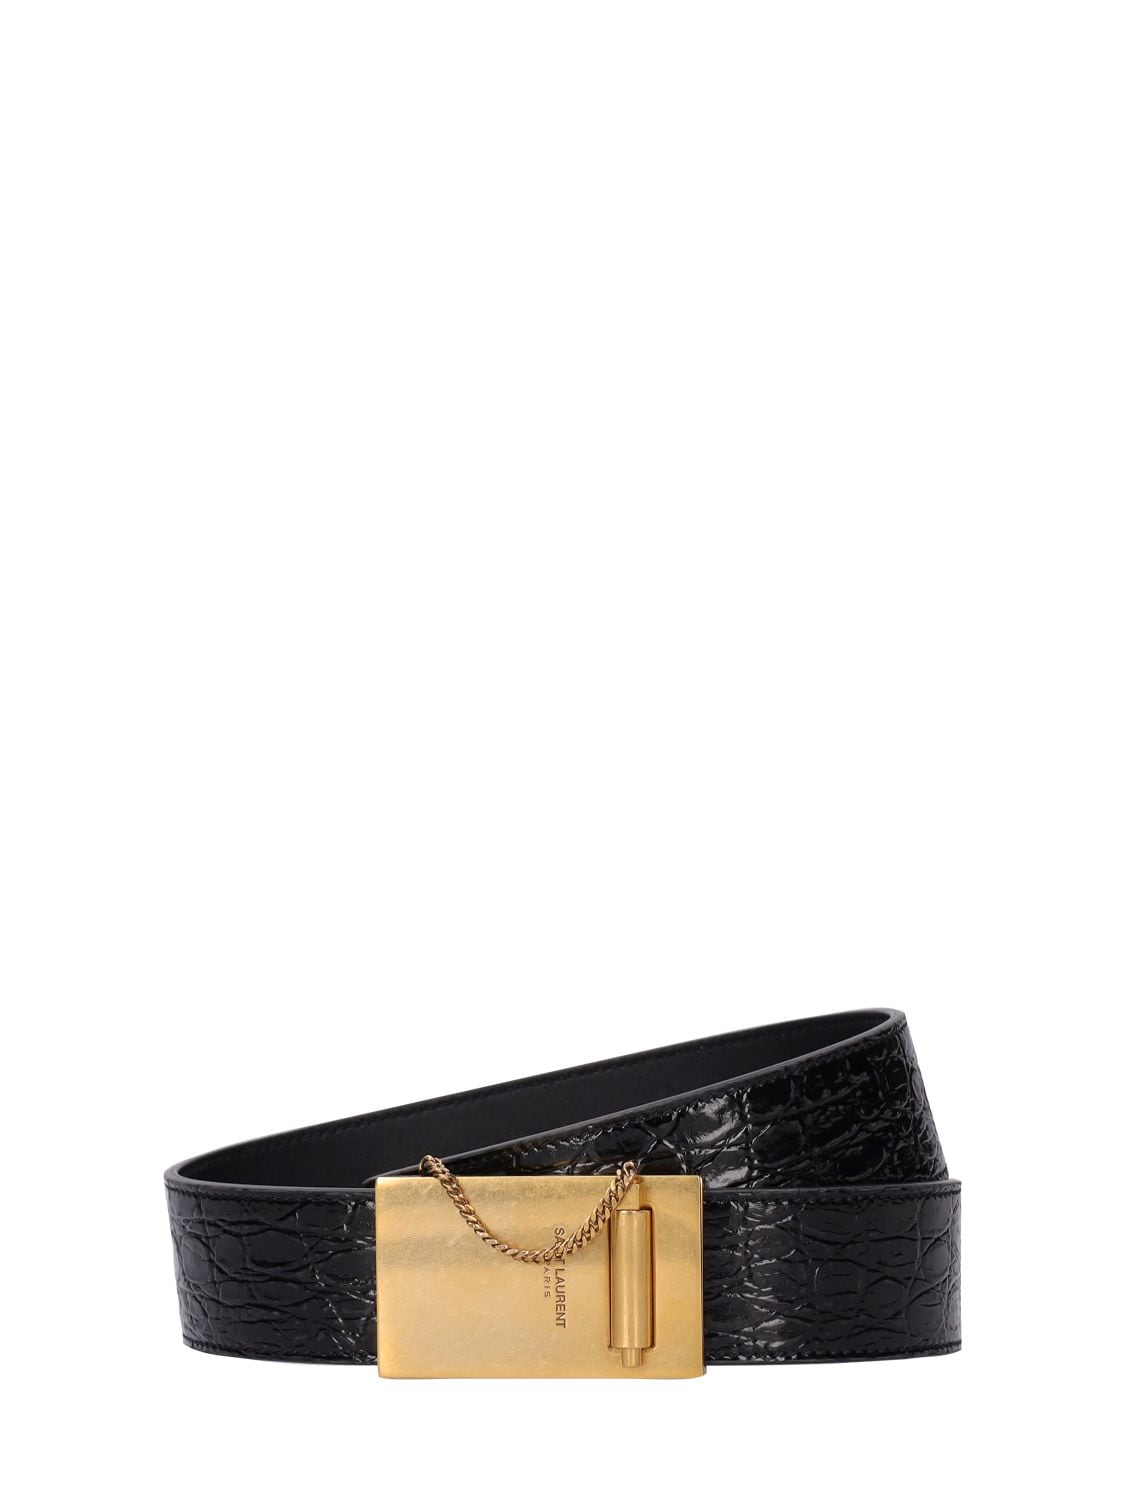 Monogram Patent Leather Belt in Black - Saint Laurent